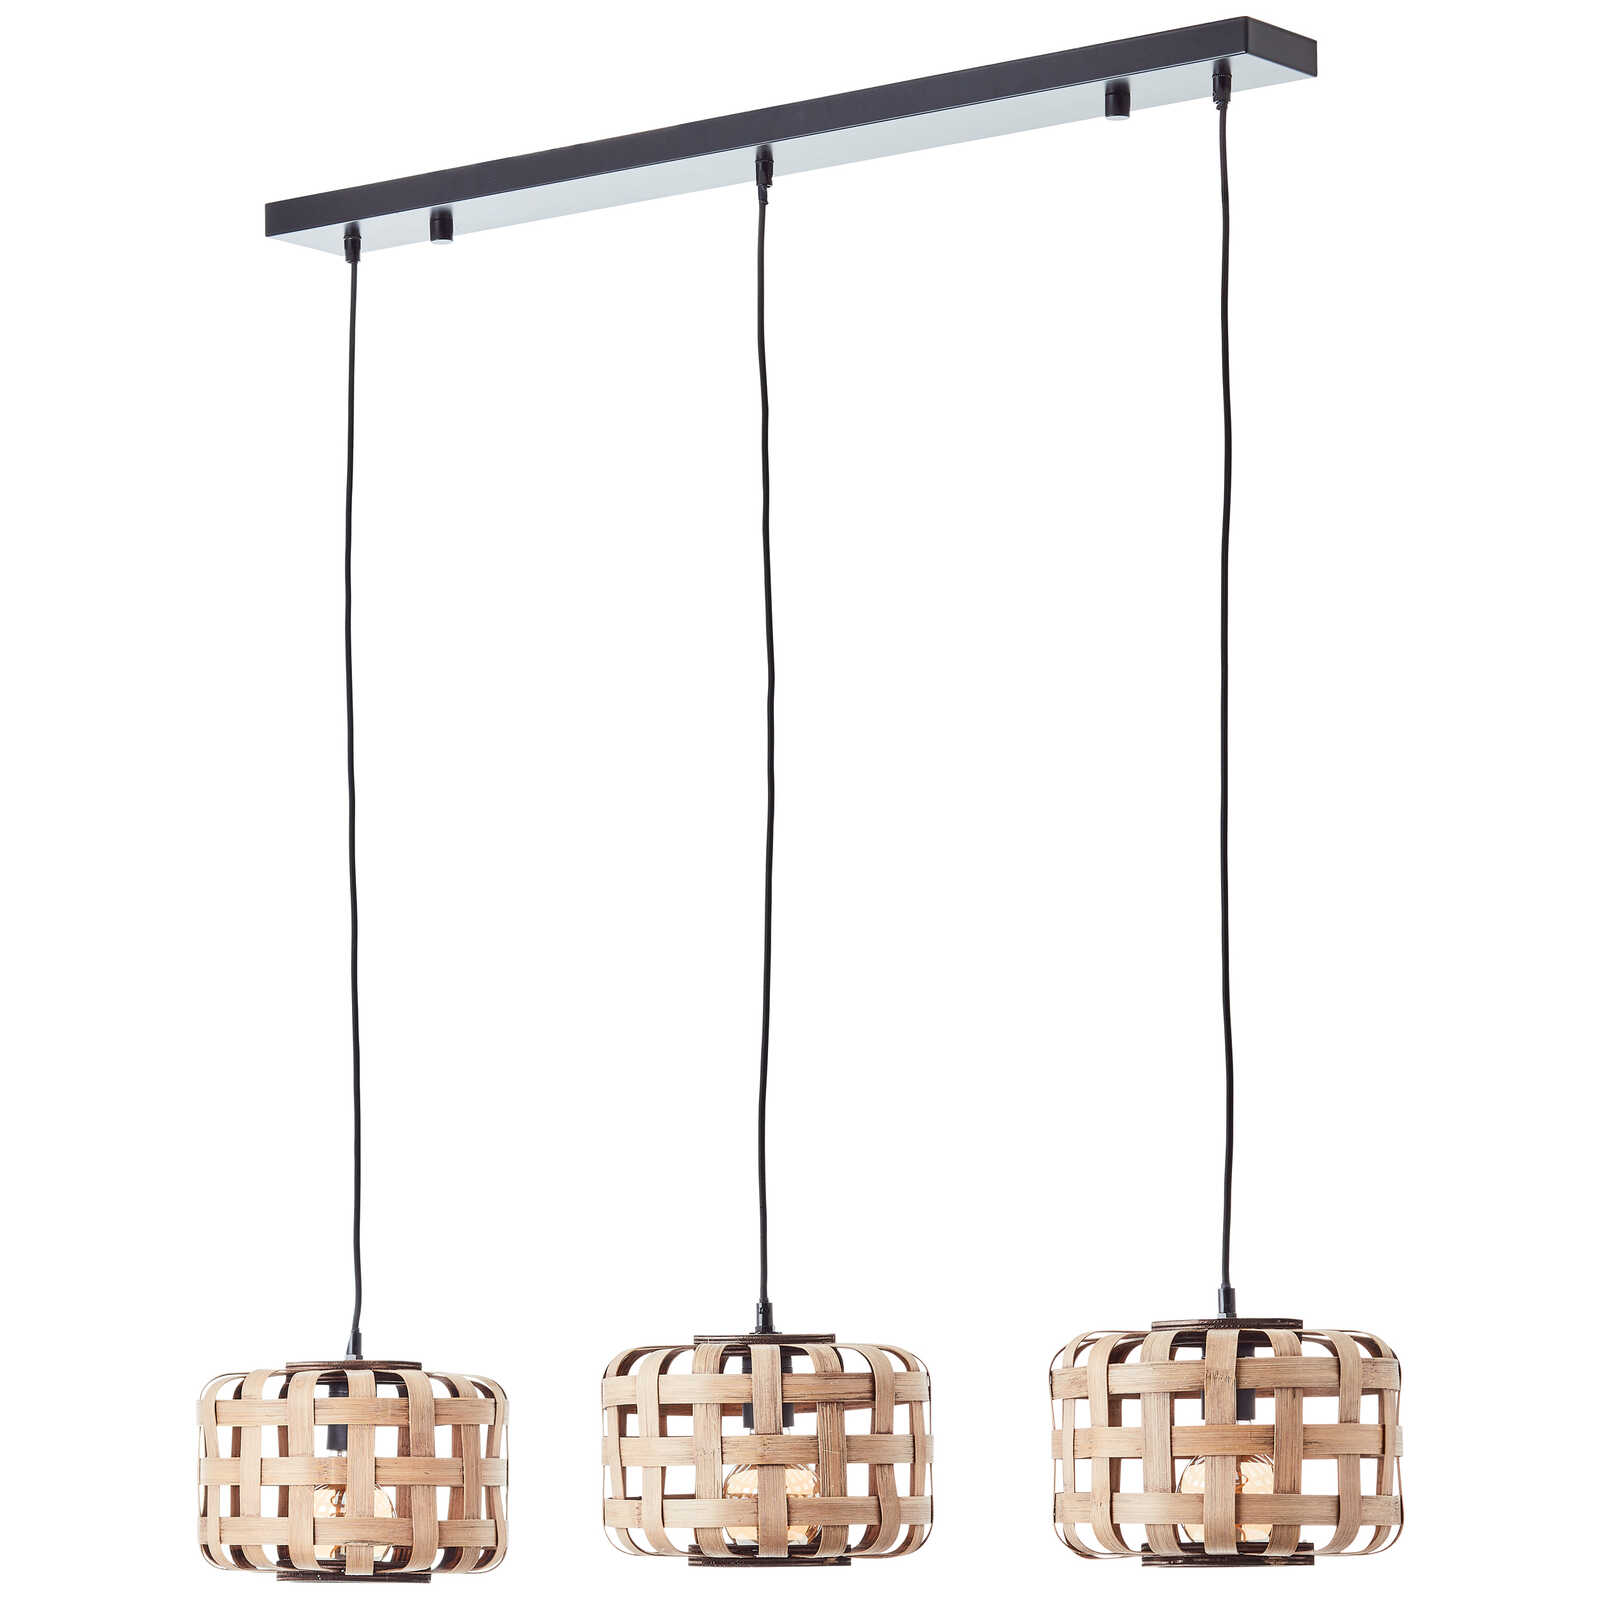             Metalen hanglamp - Wilhelm 6 - Bruin
        